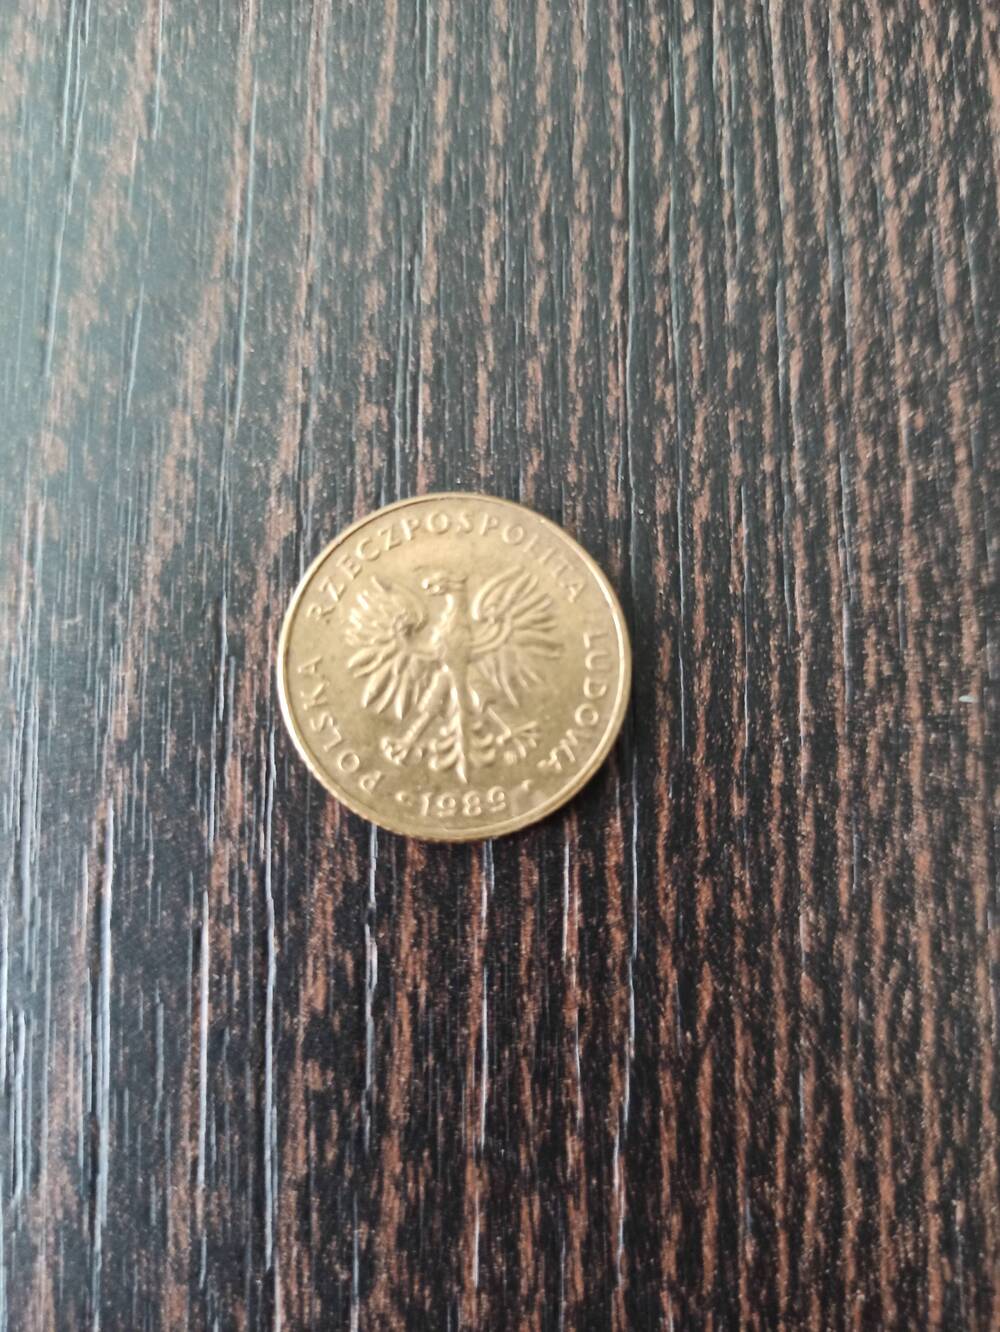 Нумизматика. Монета Польши достоинством 10 злотых 1989 года. Лицевая сторона – 10 злотых, гербовая сторона – герб.